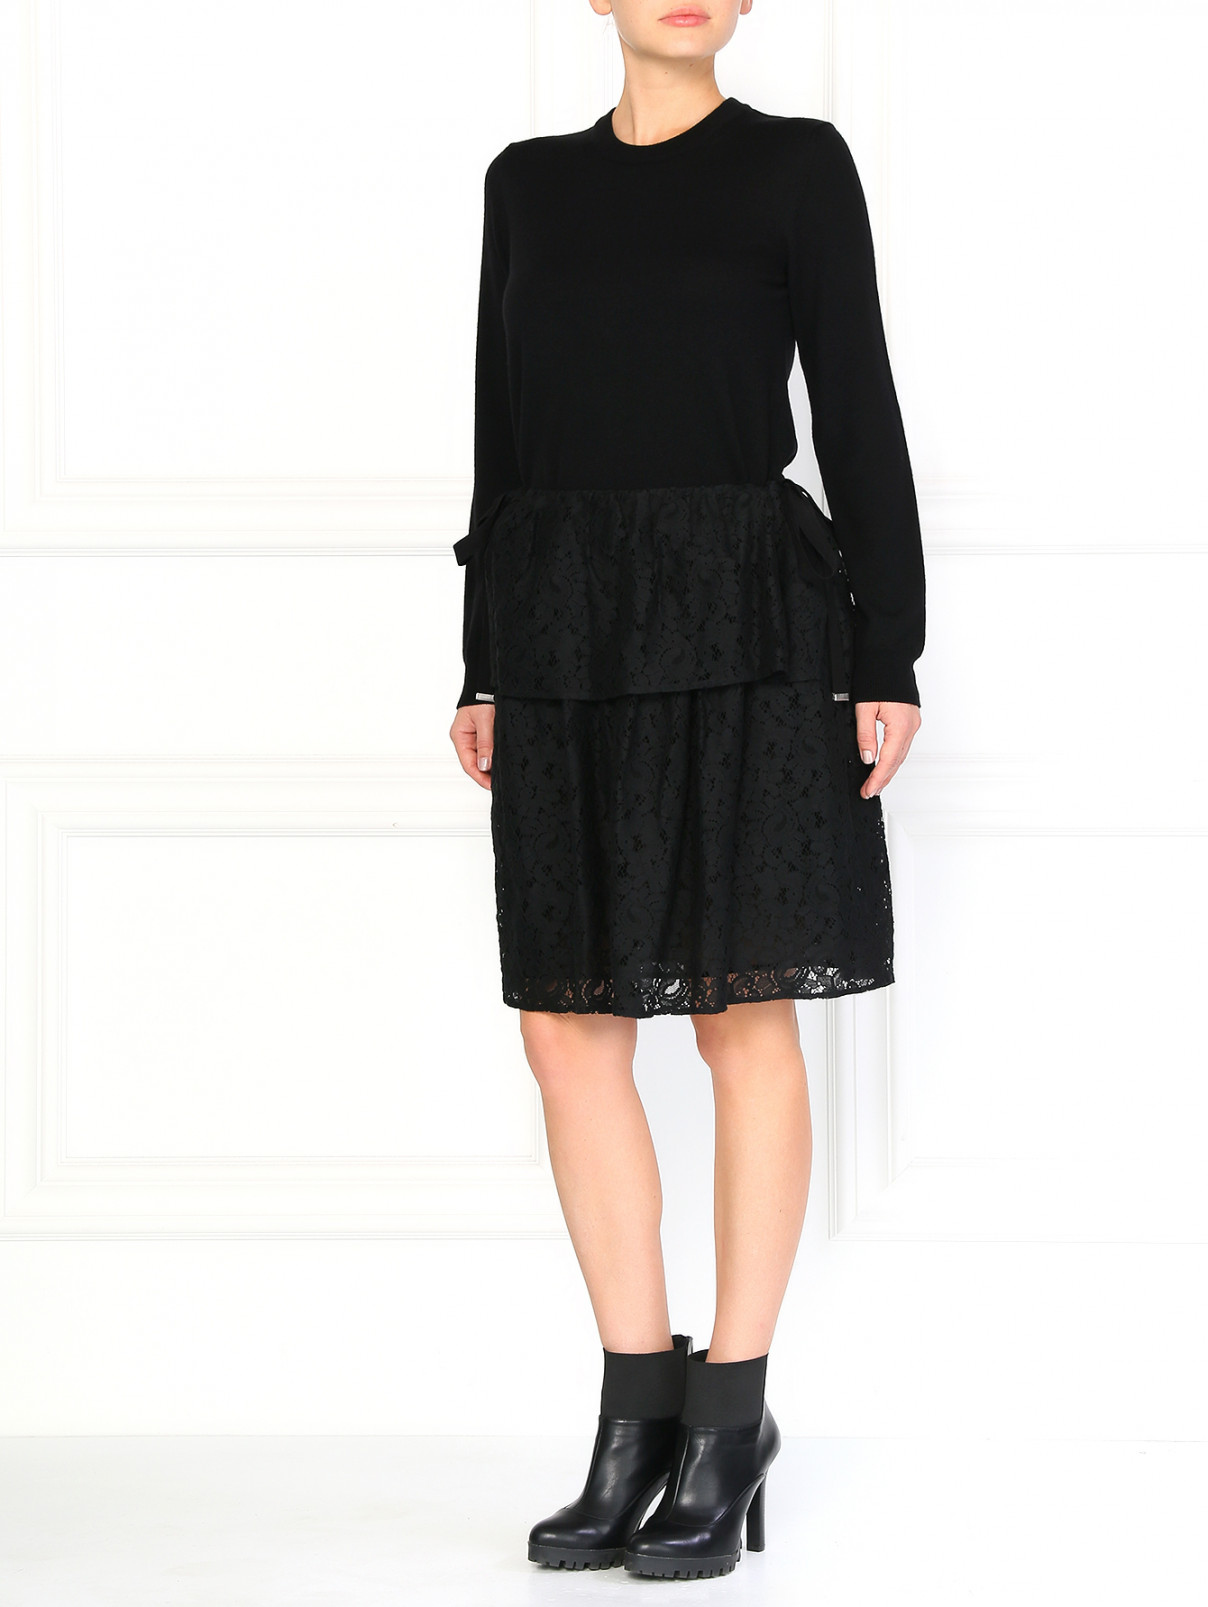 Мини-юбка из кружева Maison Margiela  –  Модель Общий вид  – Цвет:  Черный